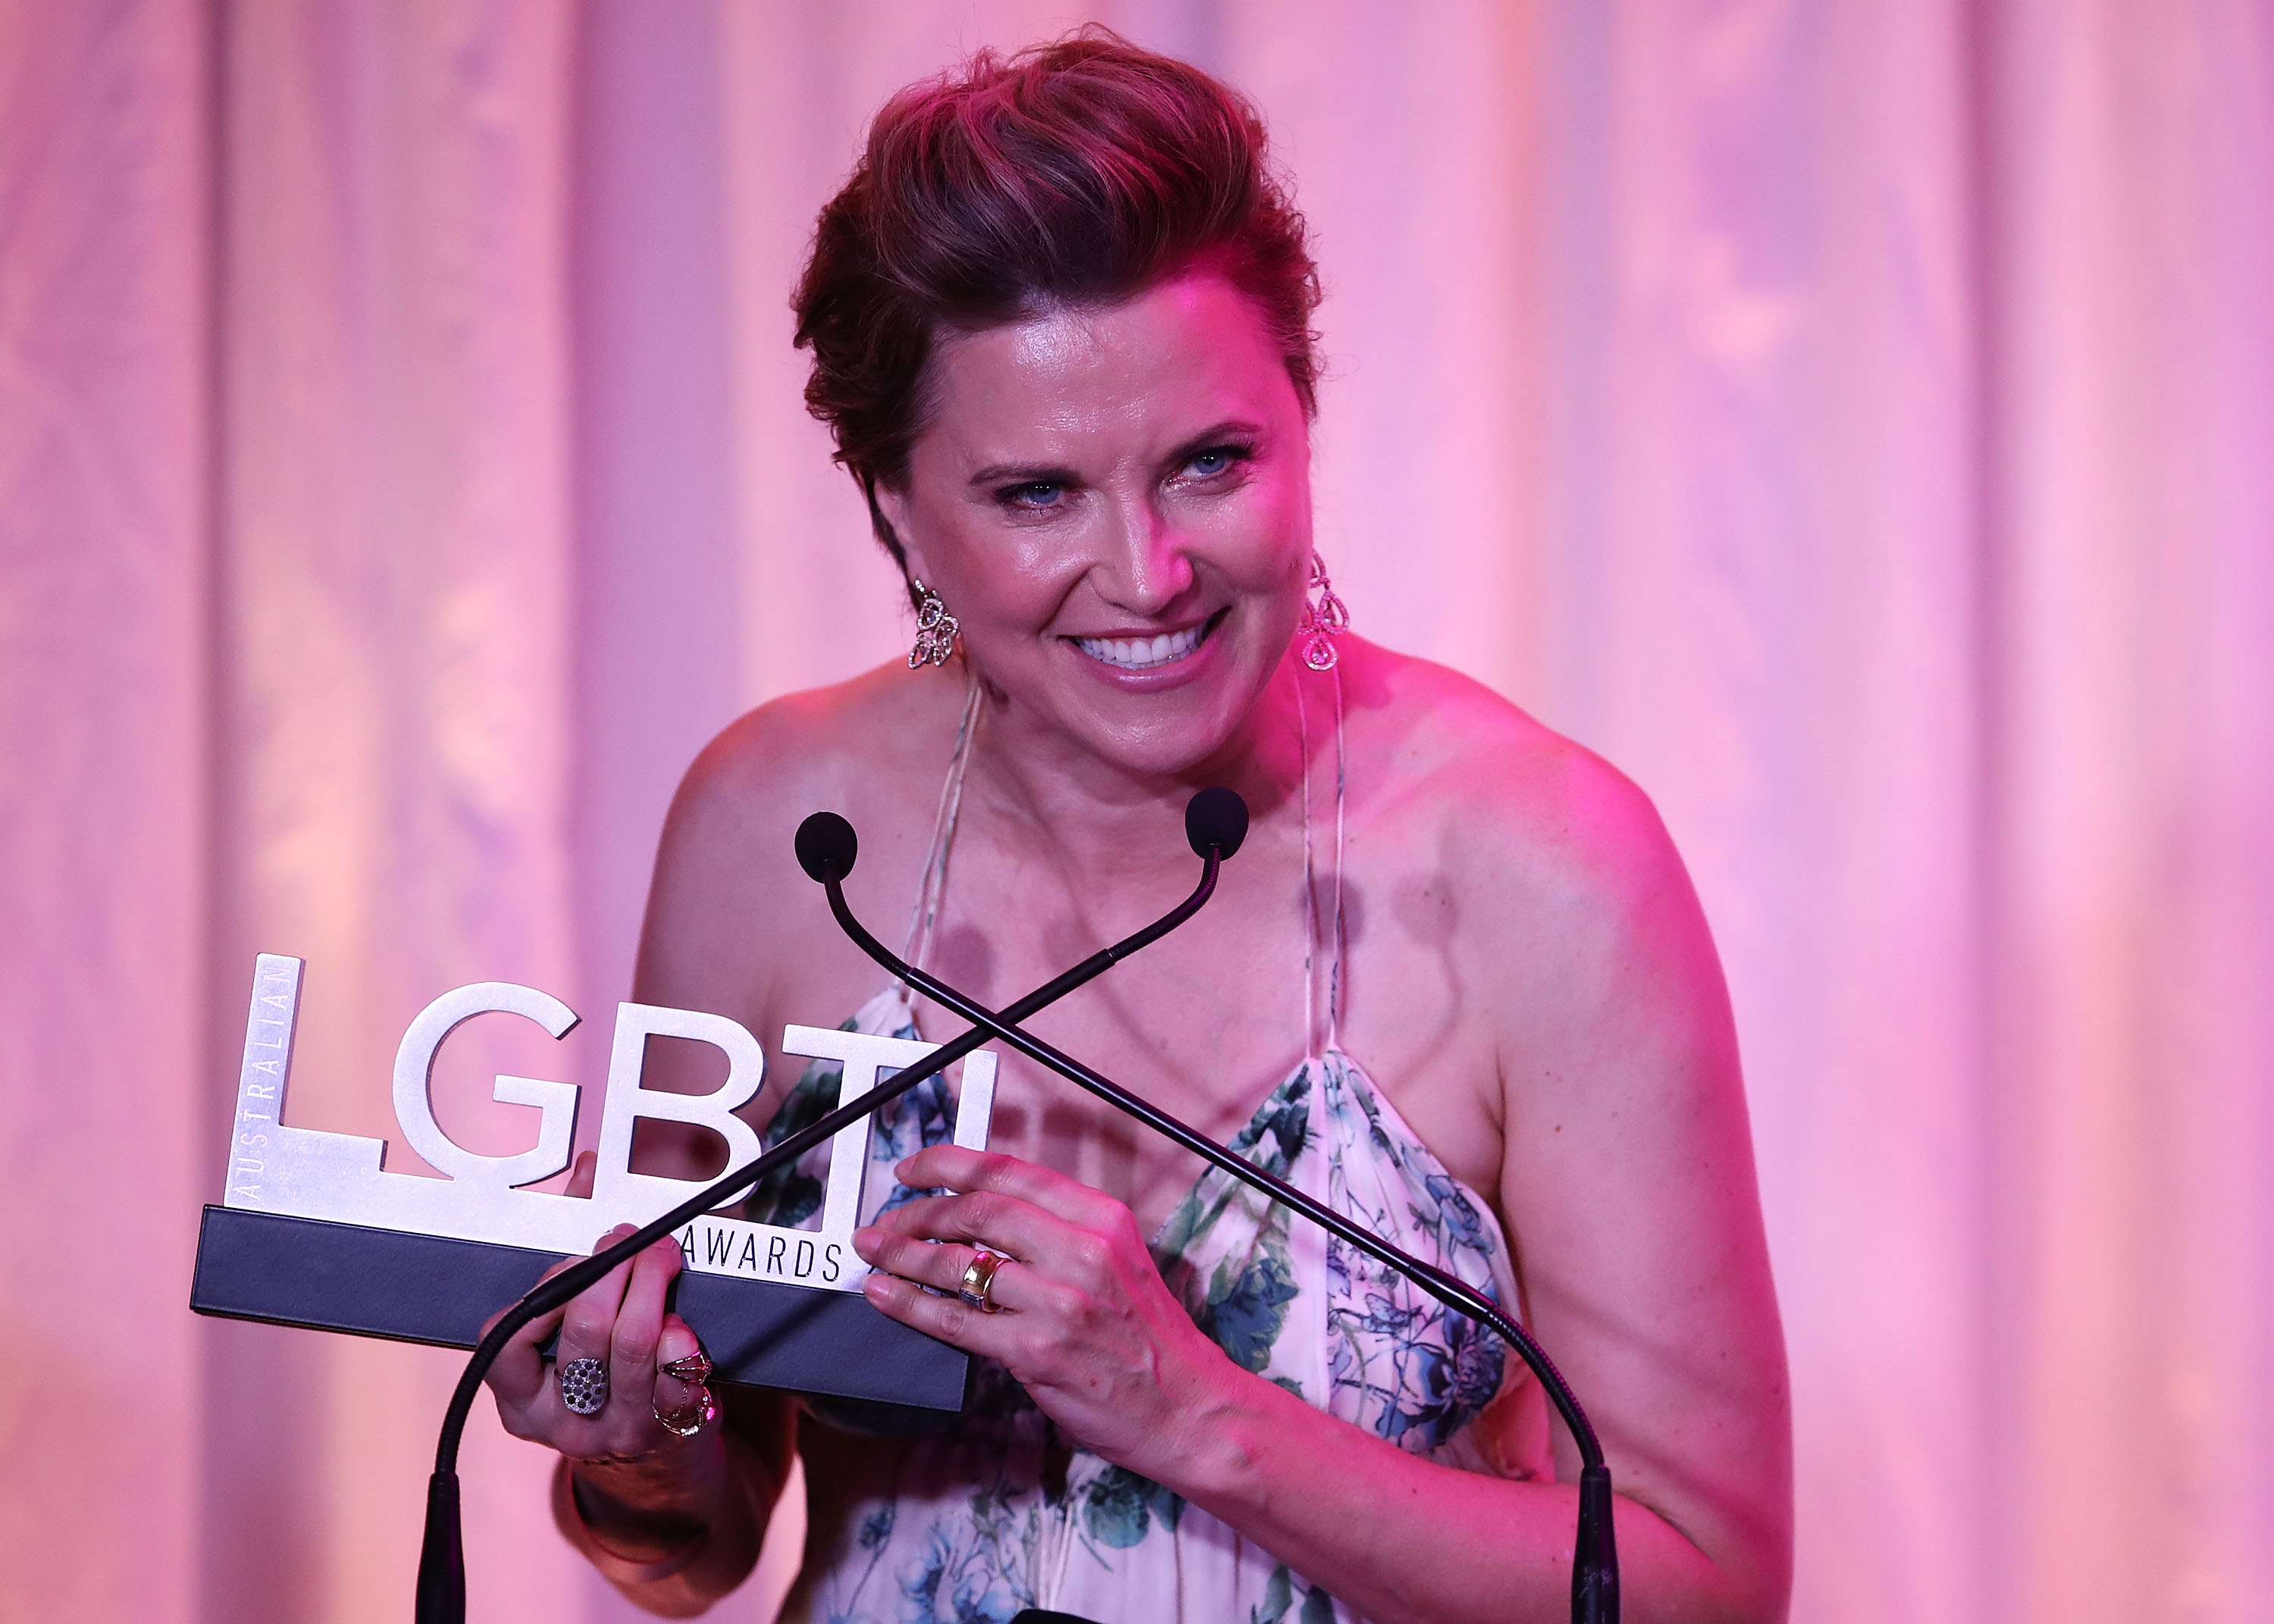 Lucy Lawless acepta el premio Star 100 Ally of the Year en los Australian LGBTI Awards 2017 en Sydney Opera House el 2 de marzo de 2017, en Sídney, Australia. | Foto: Getty Images